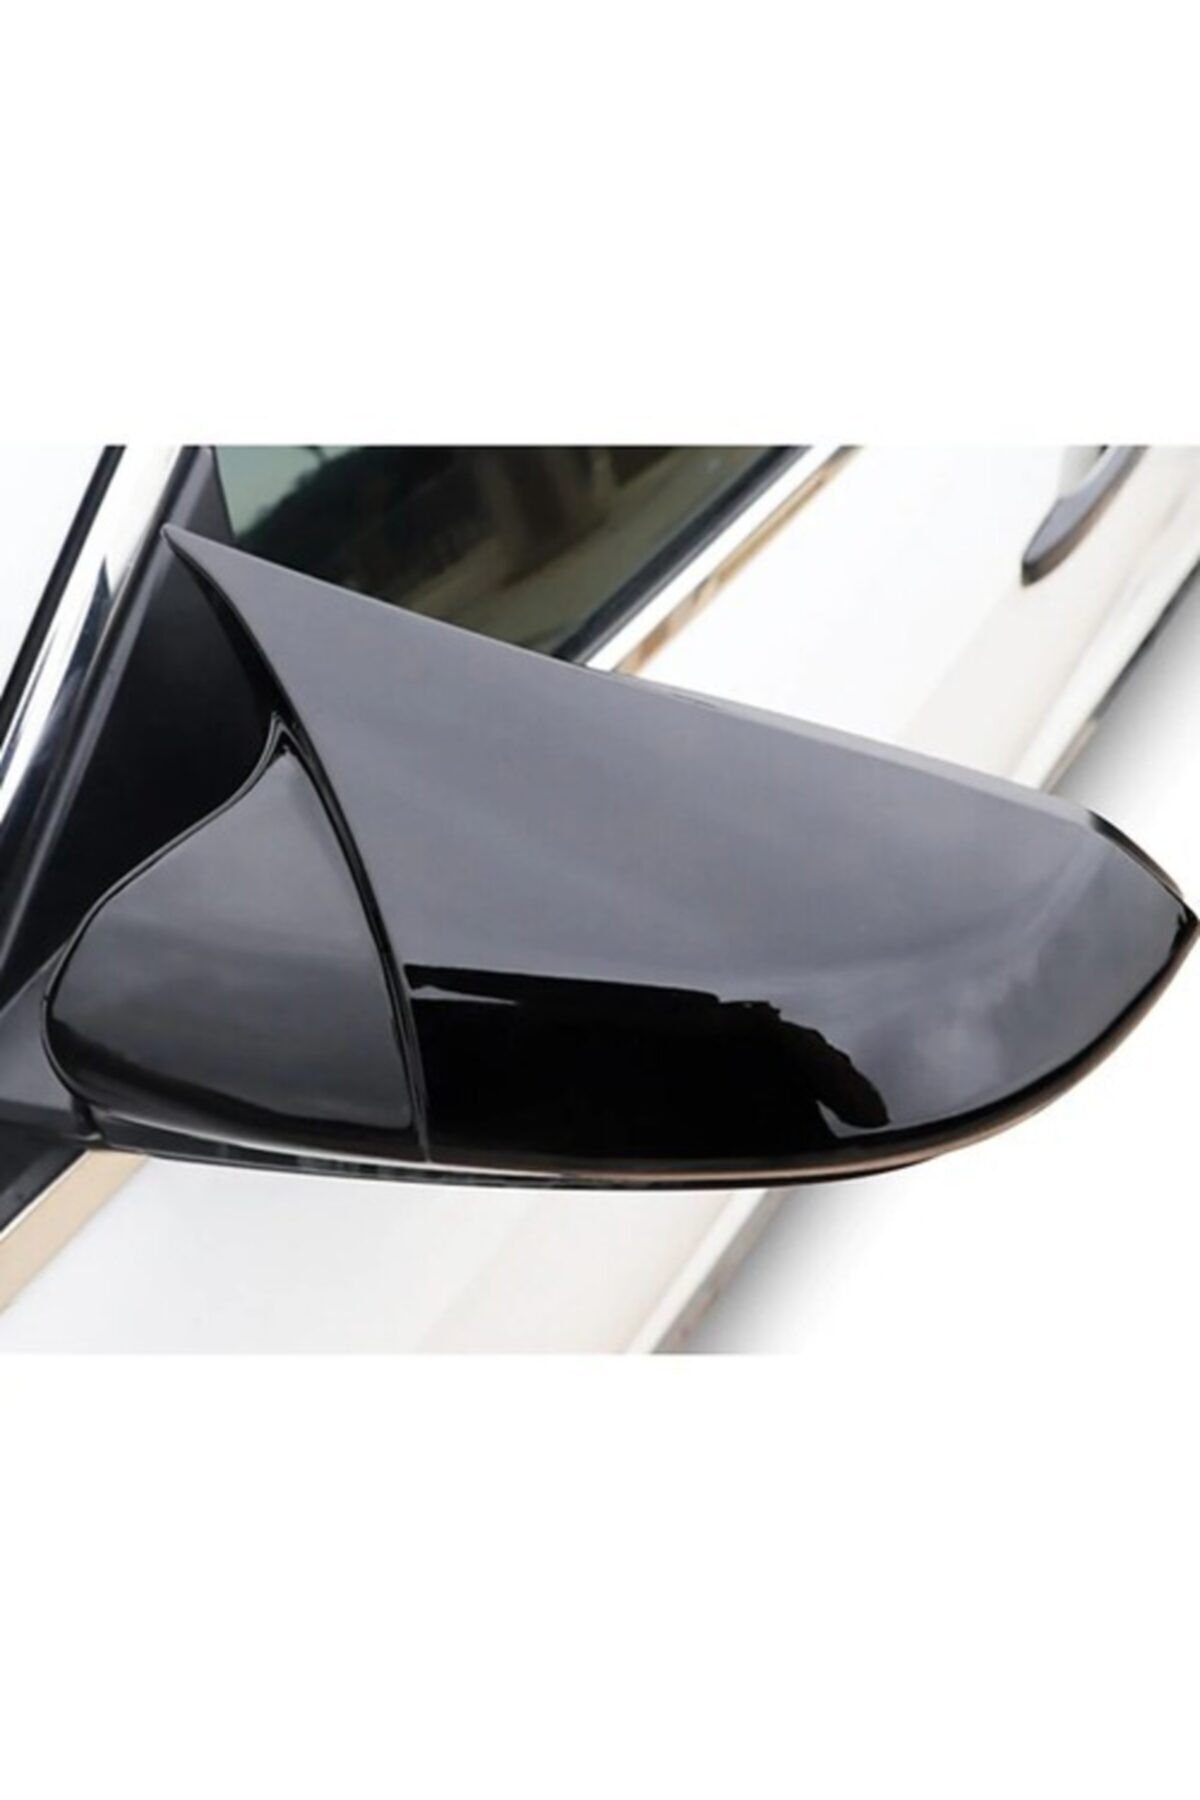 Dynamic Golf 6 Yarasa Ayna Kapağı Batman Ayna 08-12 Arası Parlak Siyah